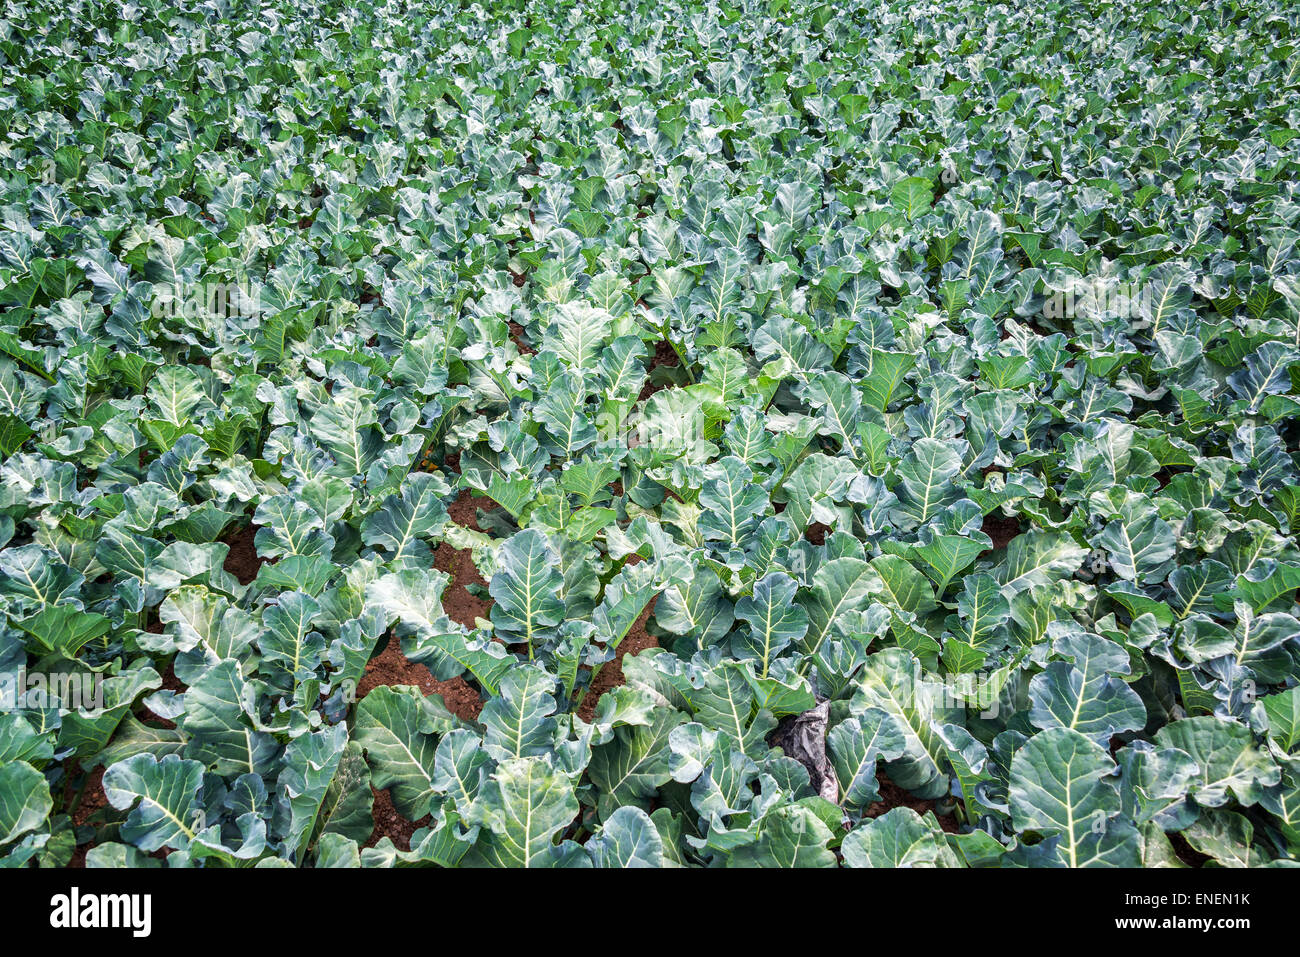 Field of green kale in Tarma, Peru Stock Photo